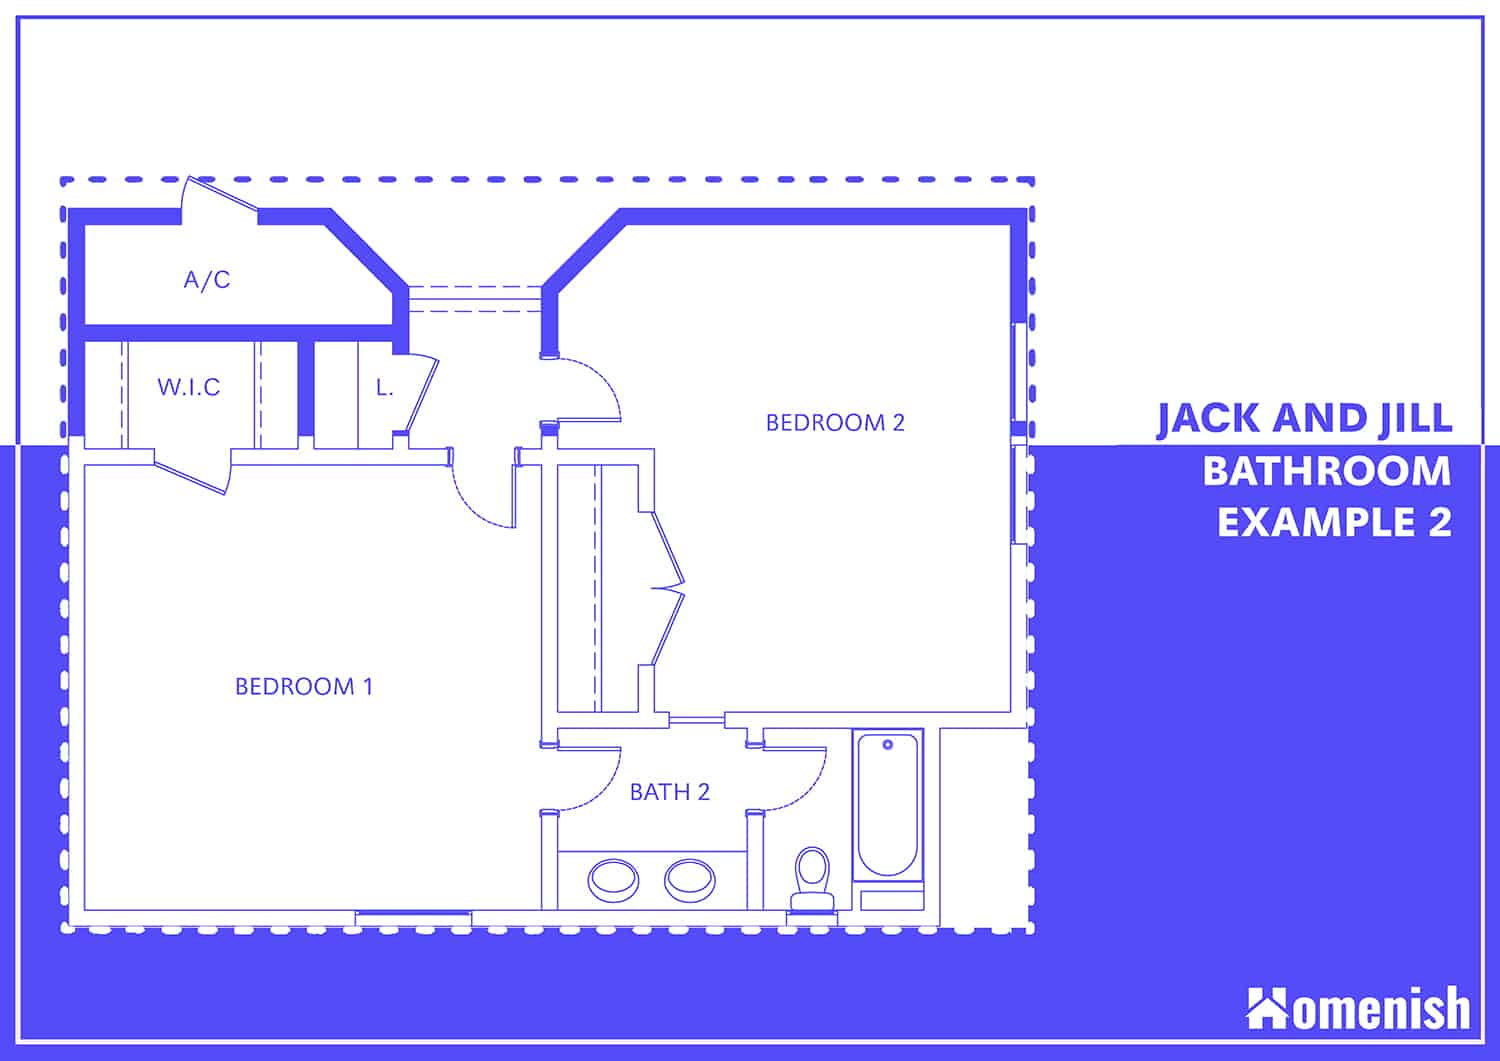 角落裏的傑克和吉爾浴室